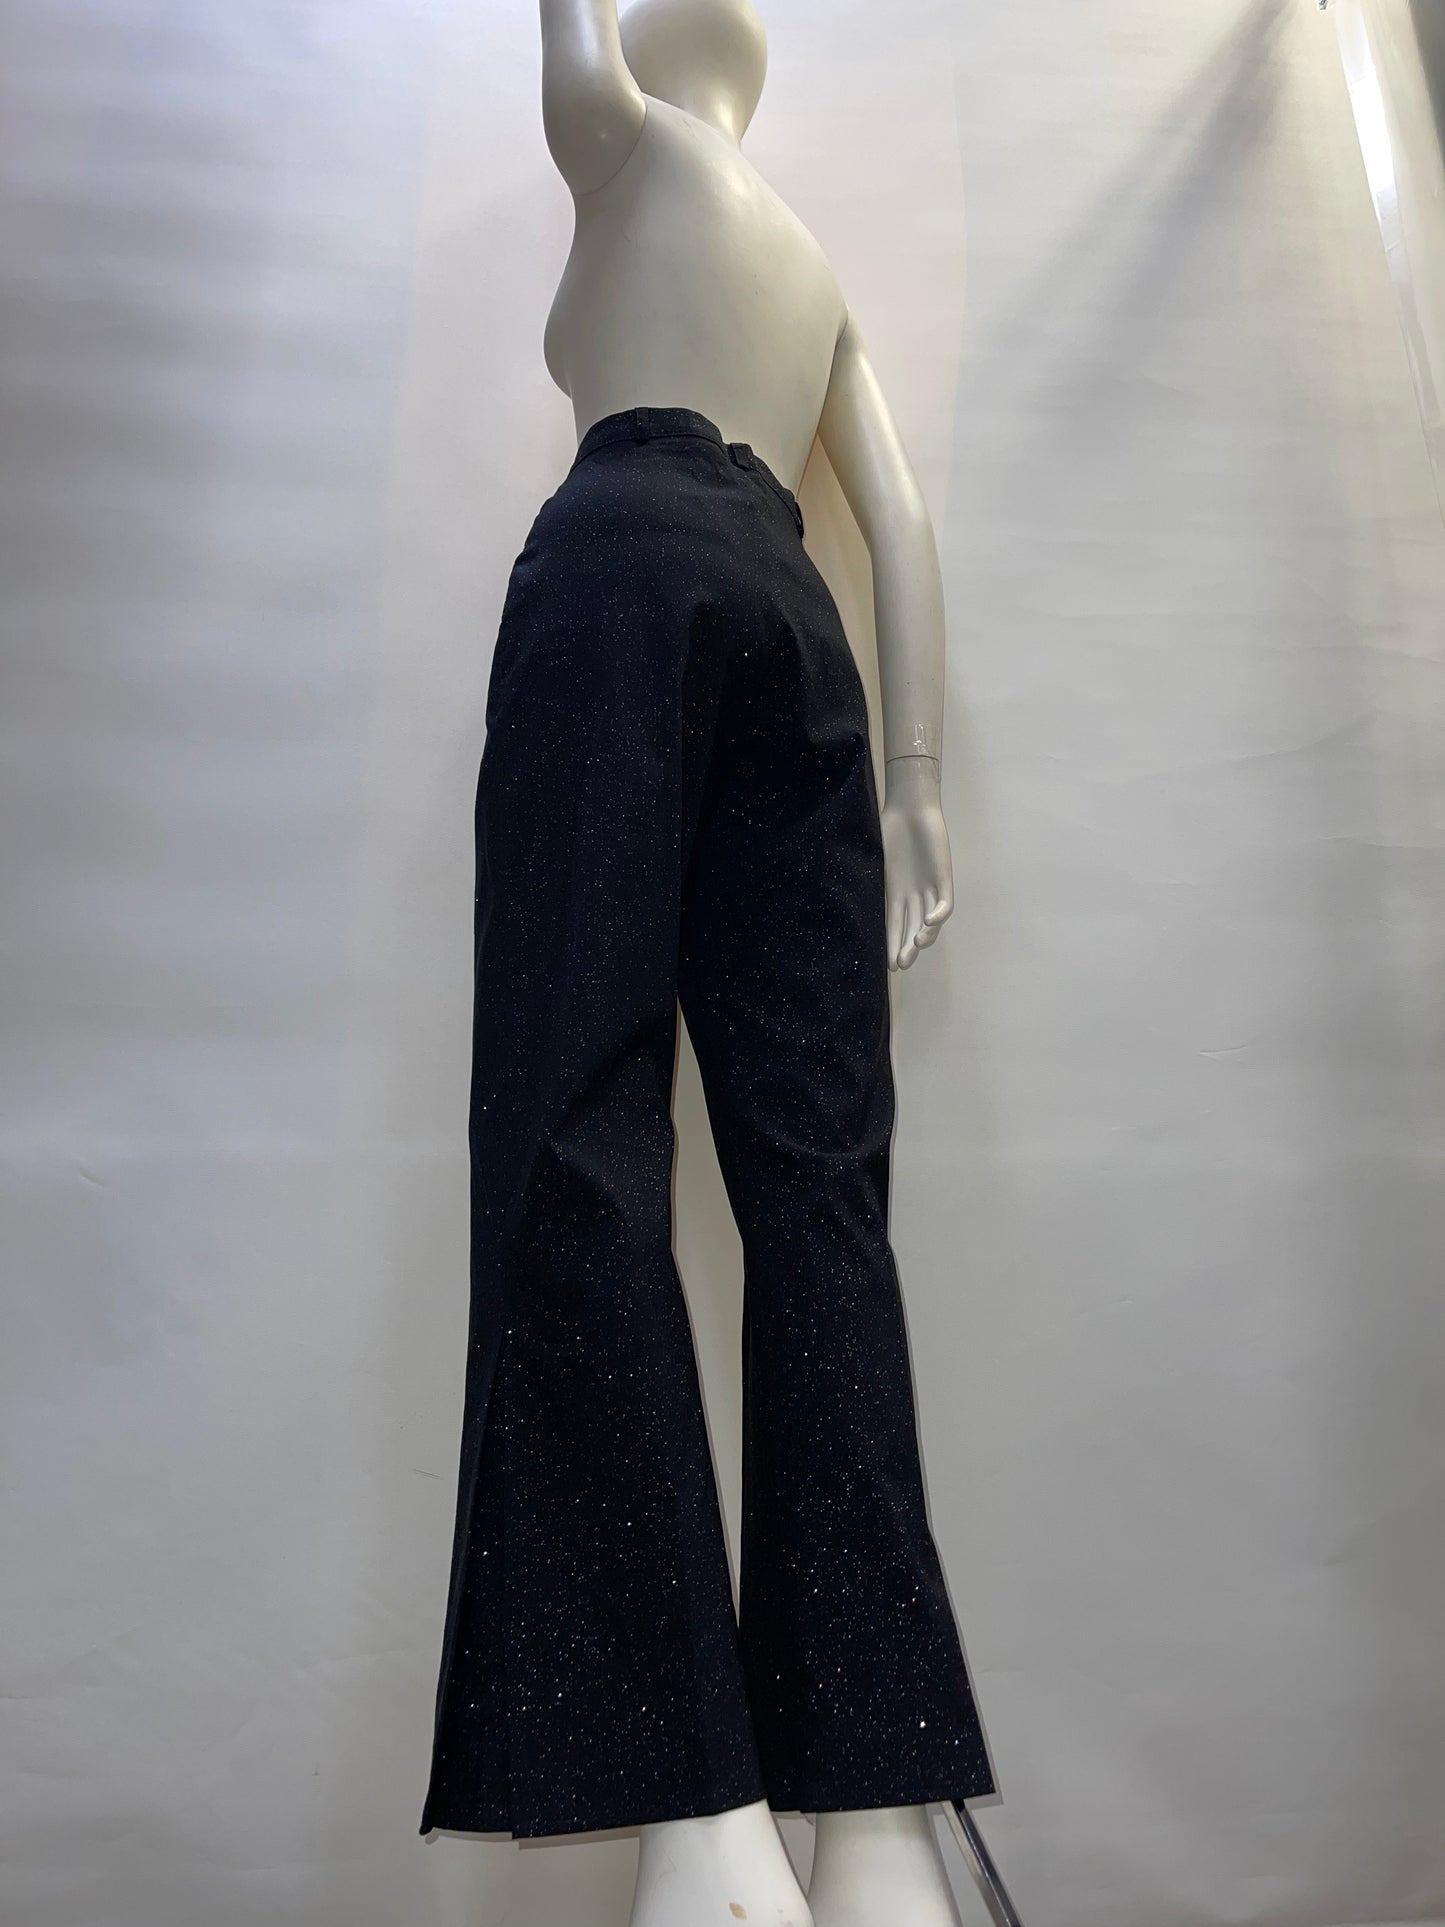 CLOCKHOUSE Vintage Button Up Sparkle Pants (Sz 28)